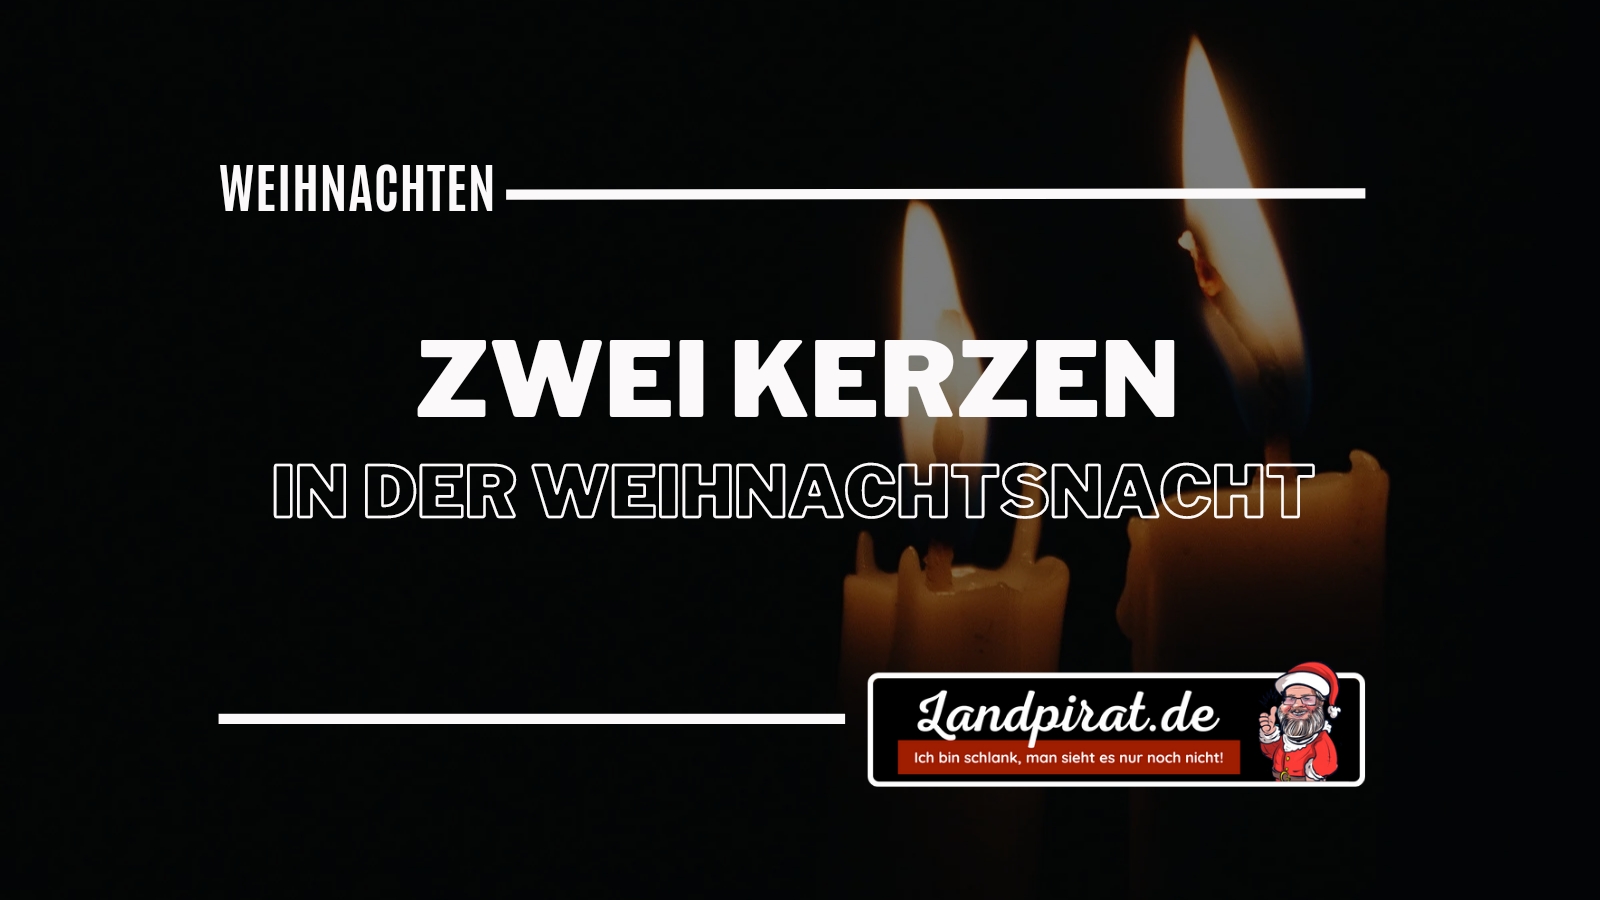 Read more about the article Zwei Kerzen in der Weihnachtsnacht